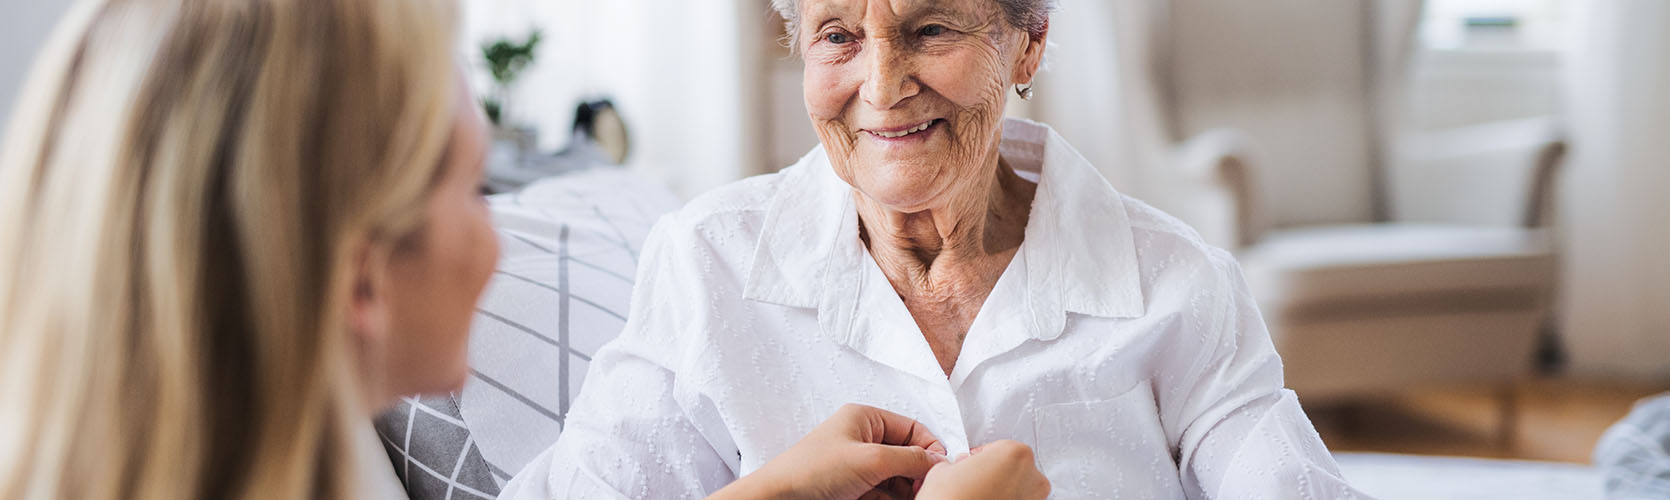 Pflegerin hilft Seniorin beim Anziehen